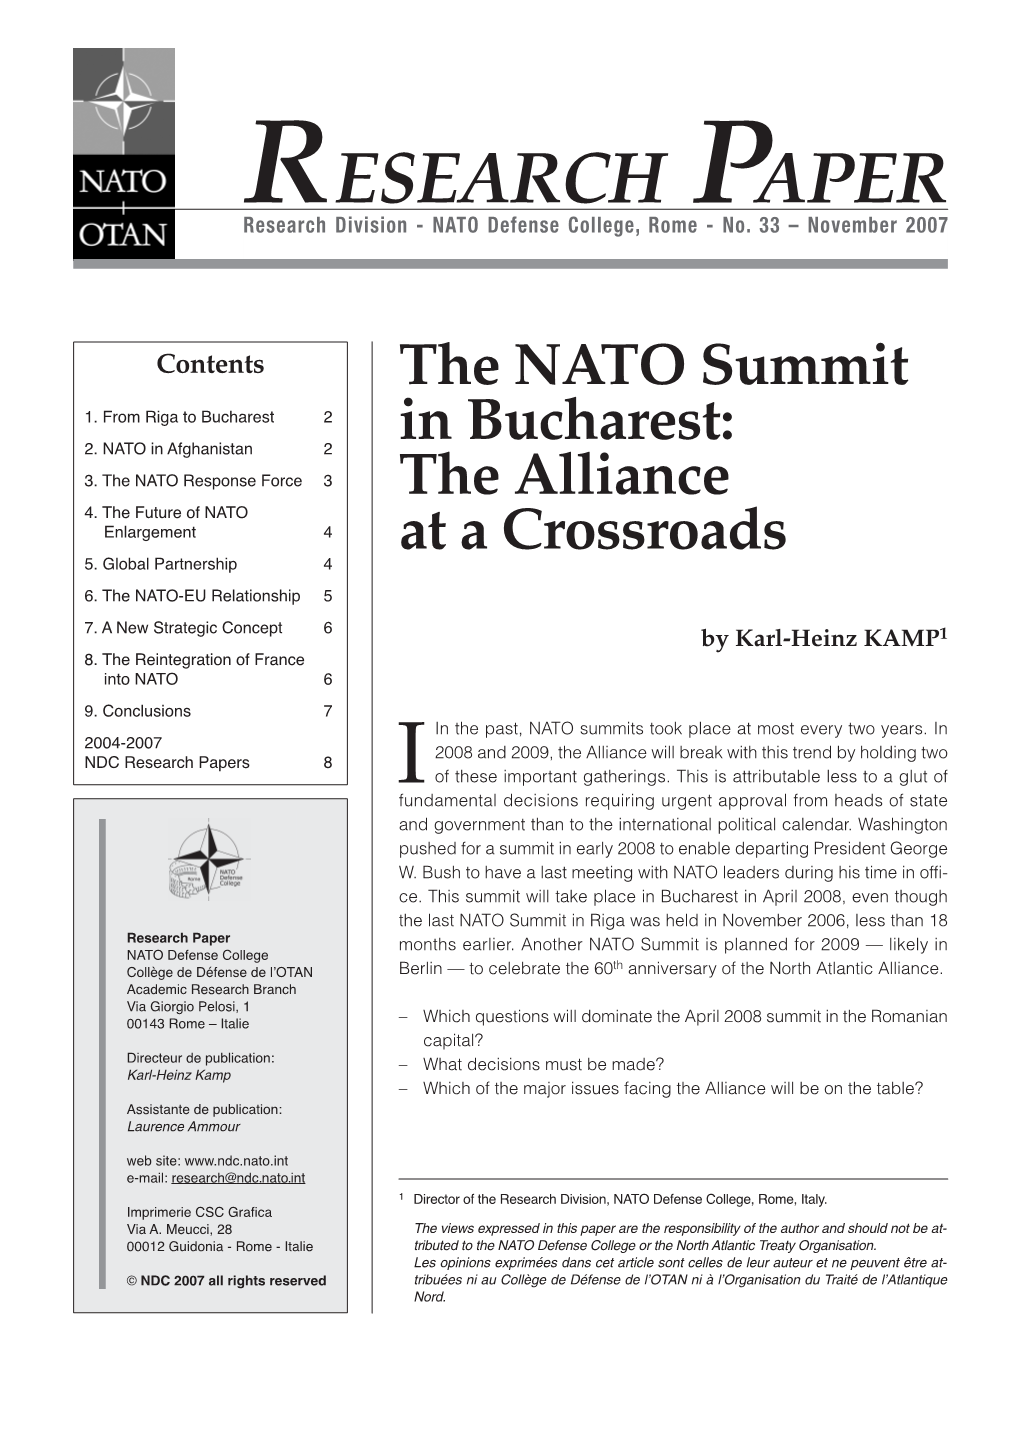 The NATO Summit in Bucharest